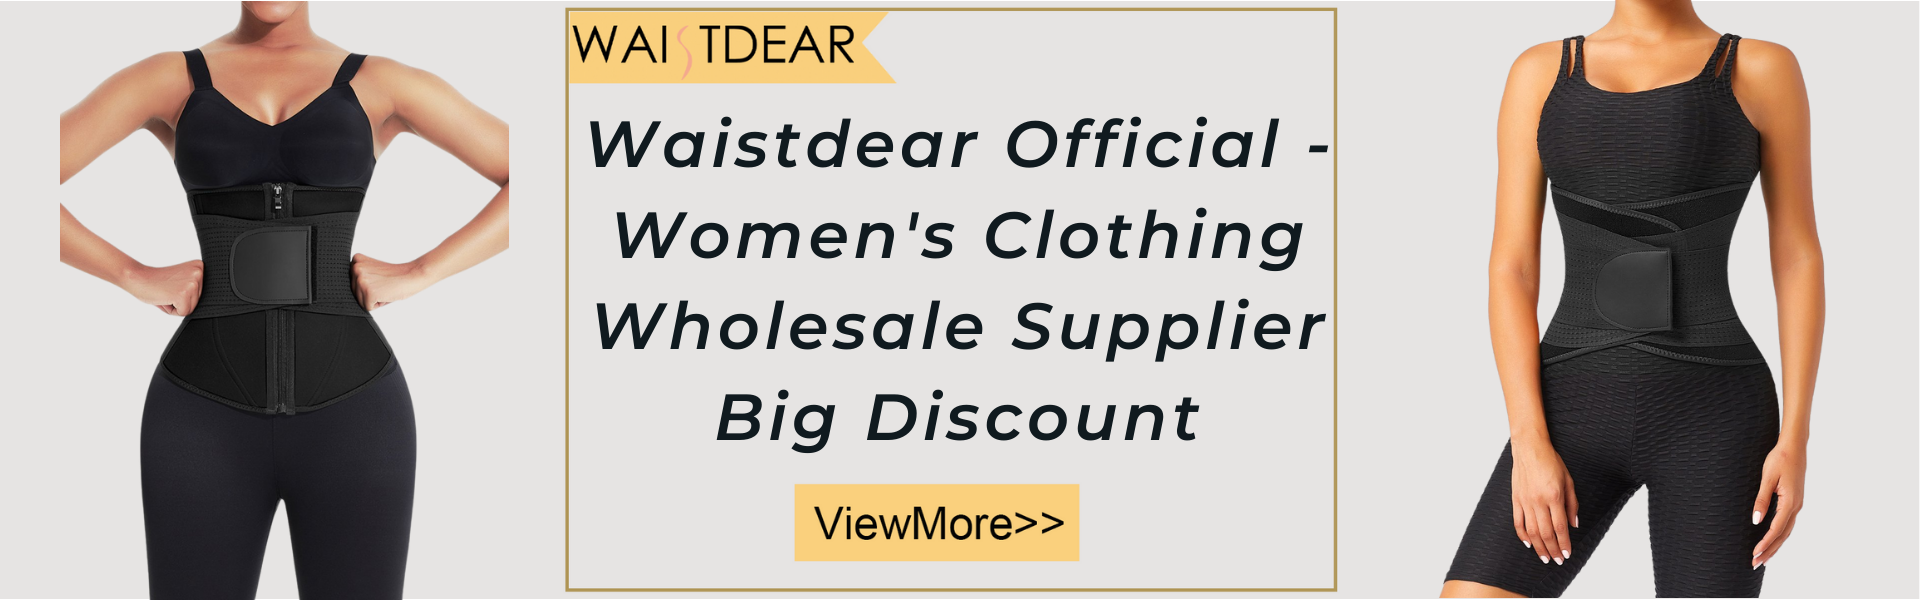 Waistdear Official - Women's Clothing Wholesale Supplier Big Discount